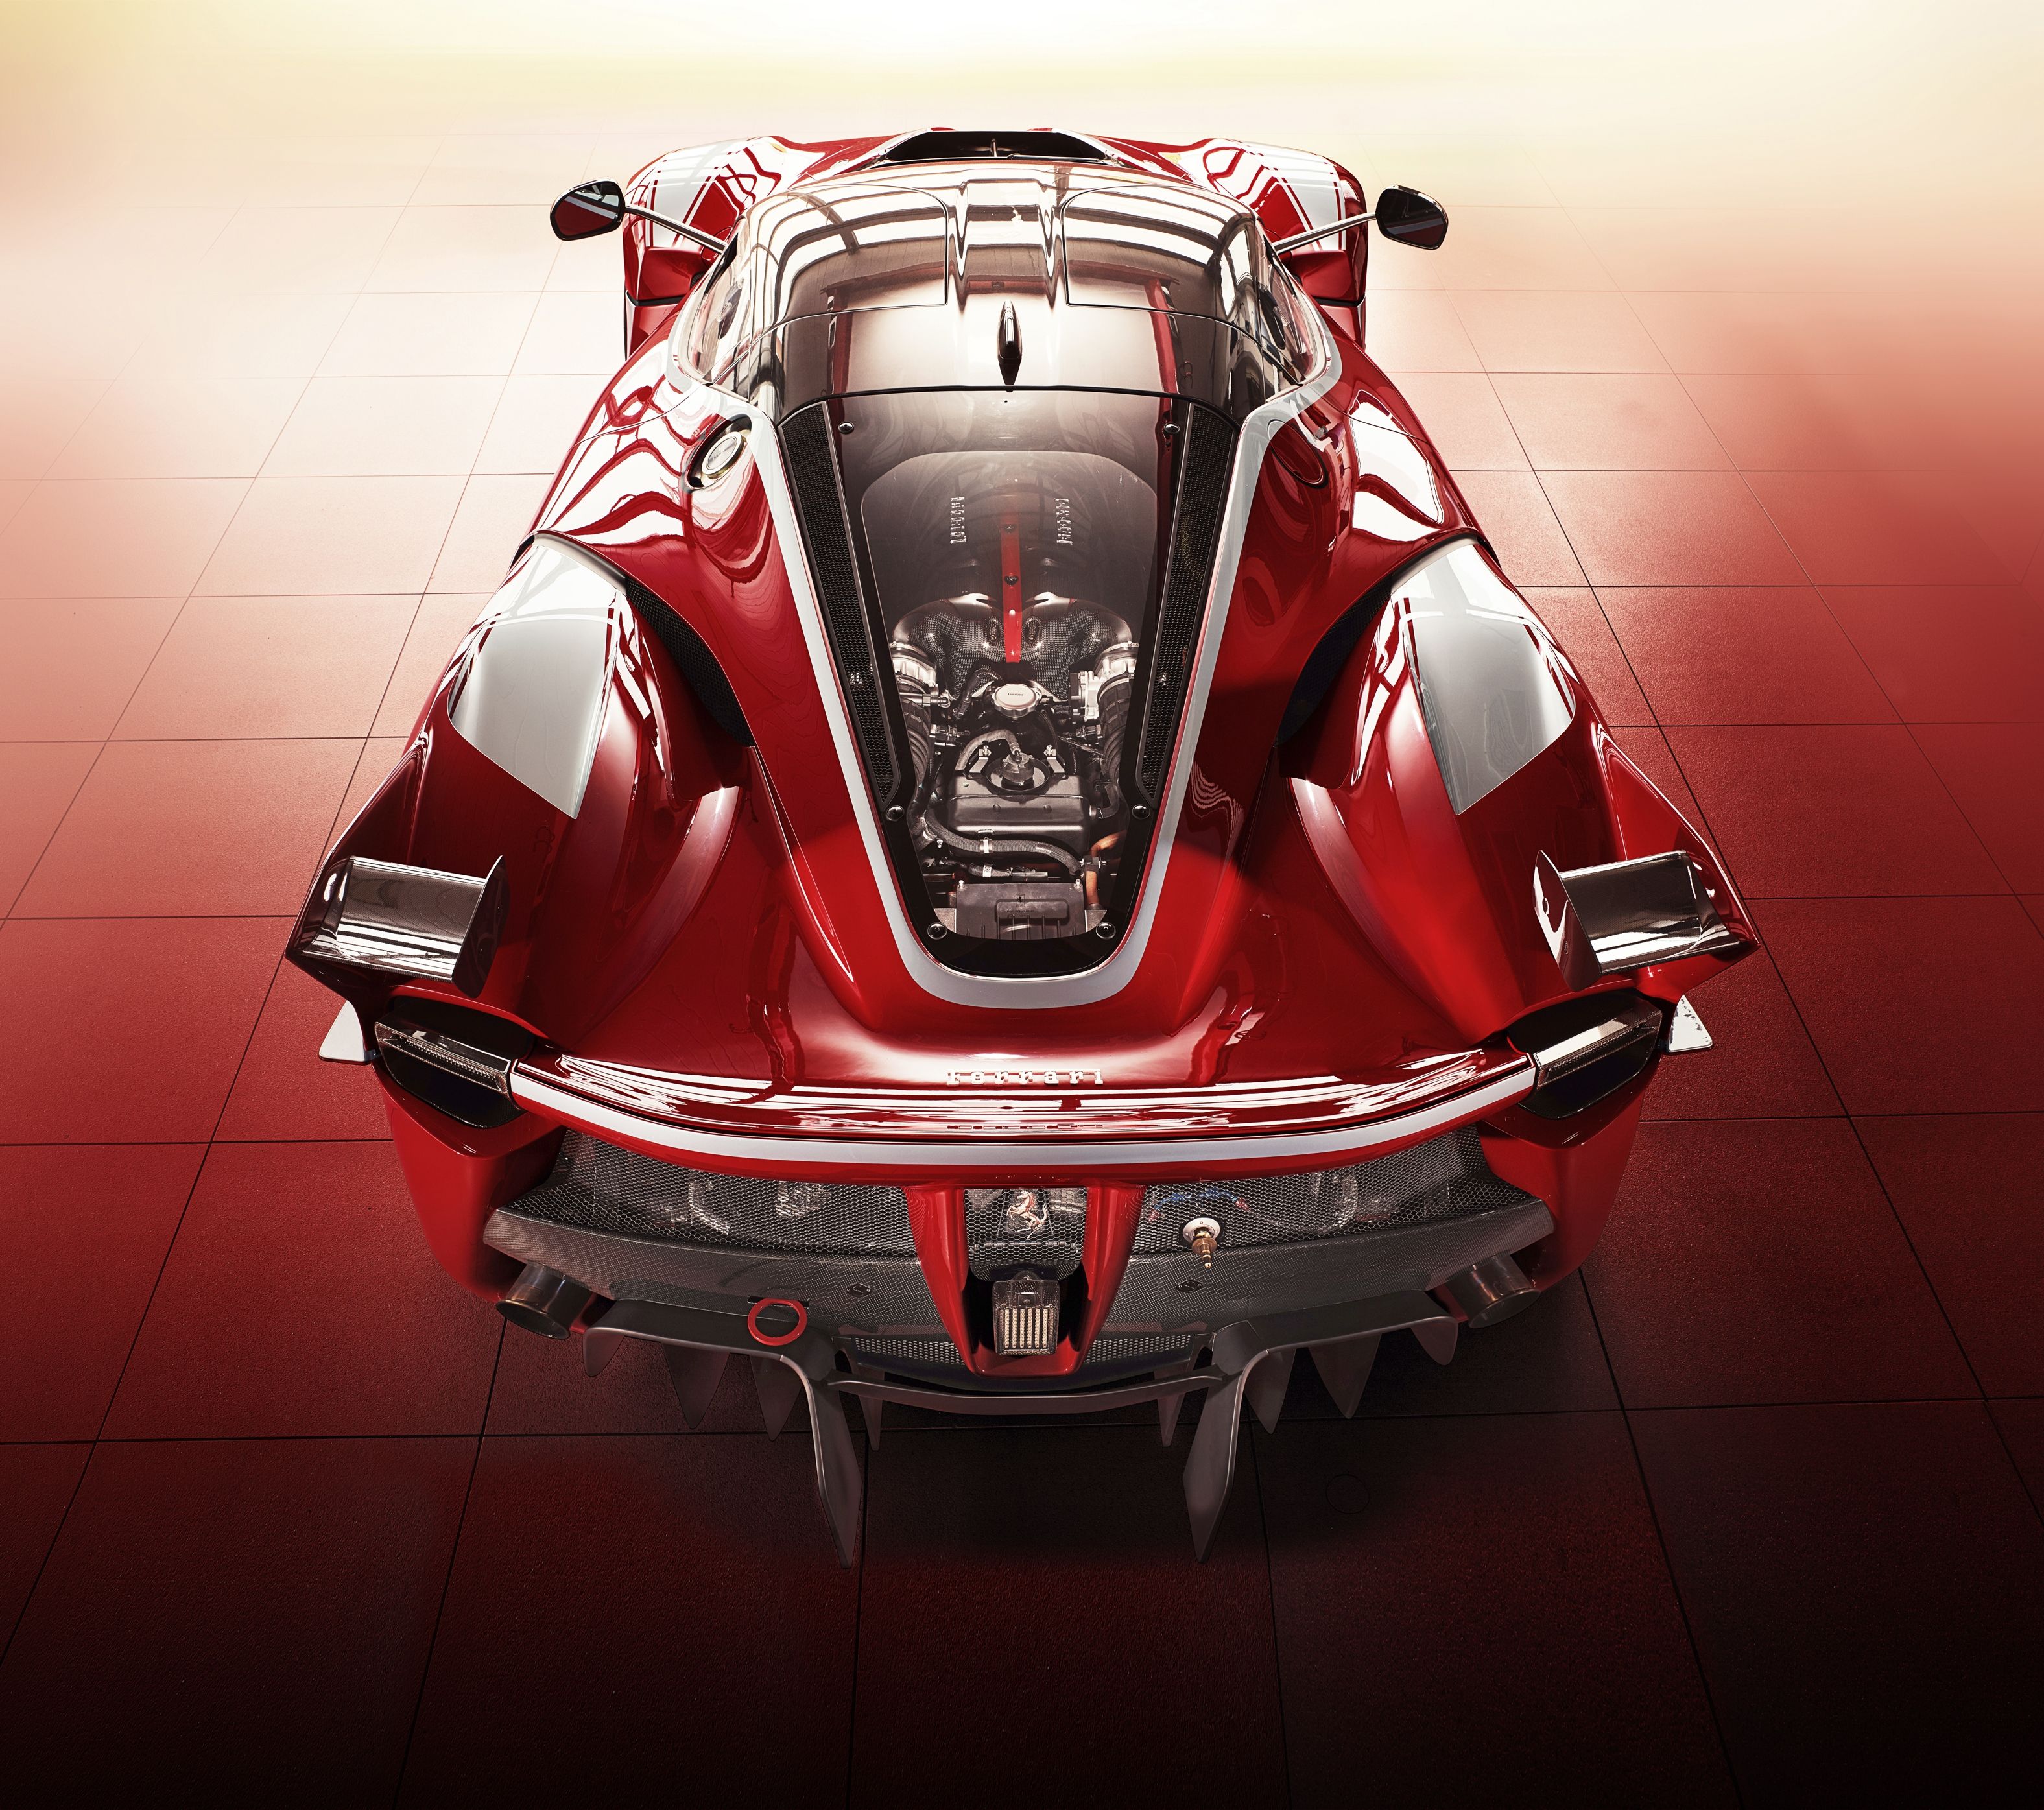 Ferrari FXX Wallpaper, Picture, Image